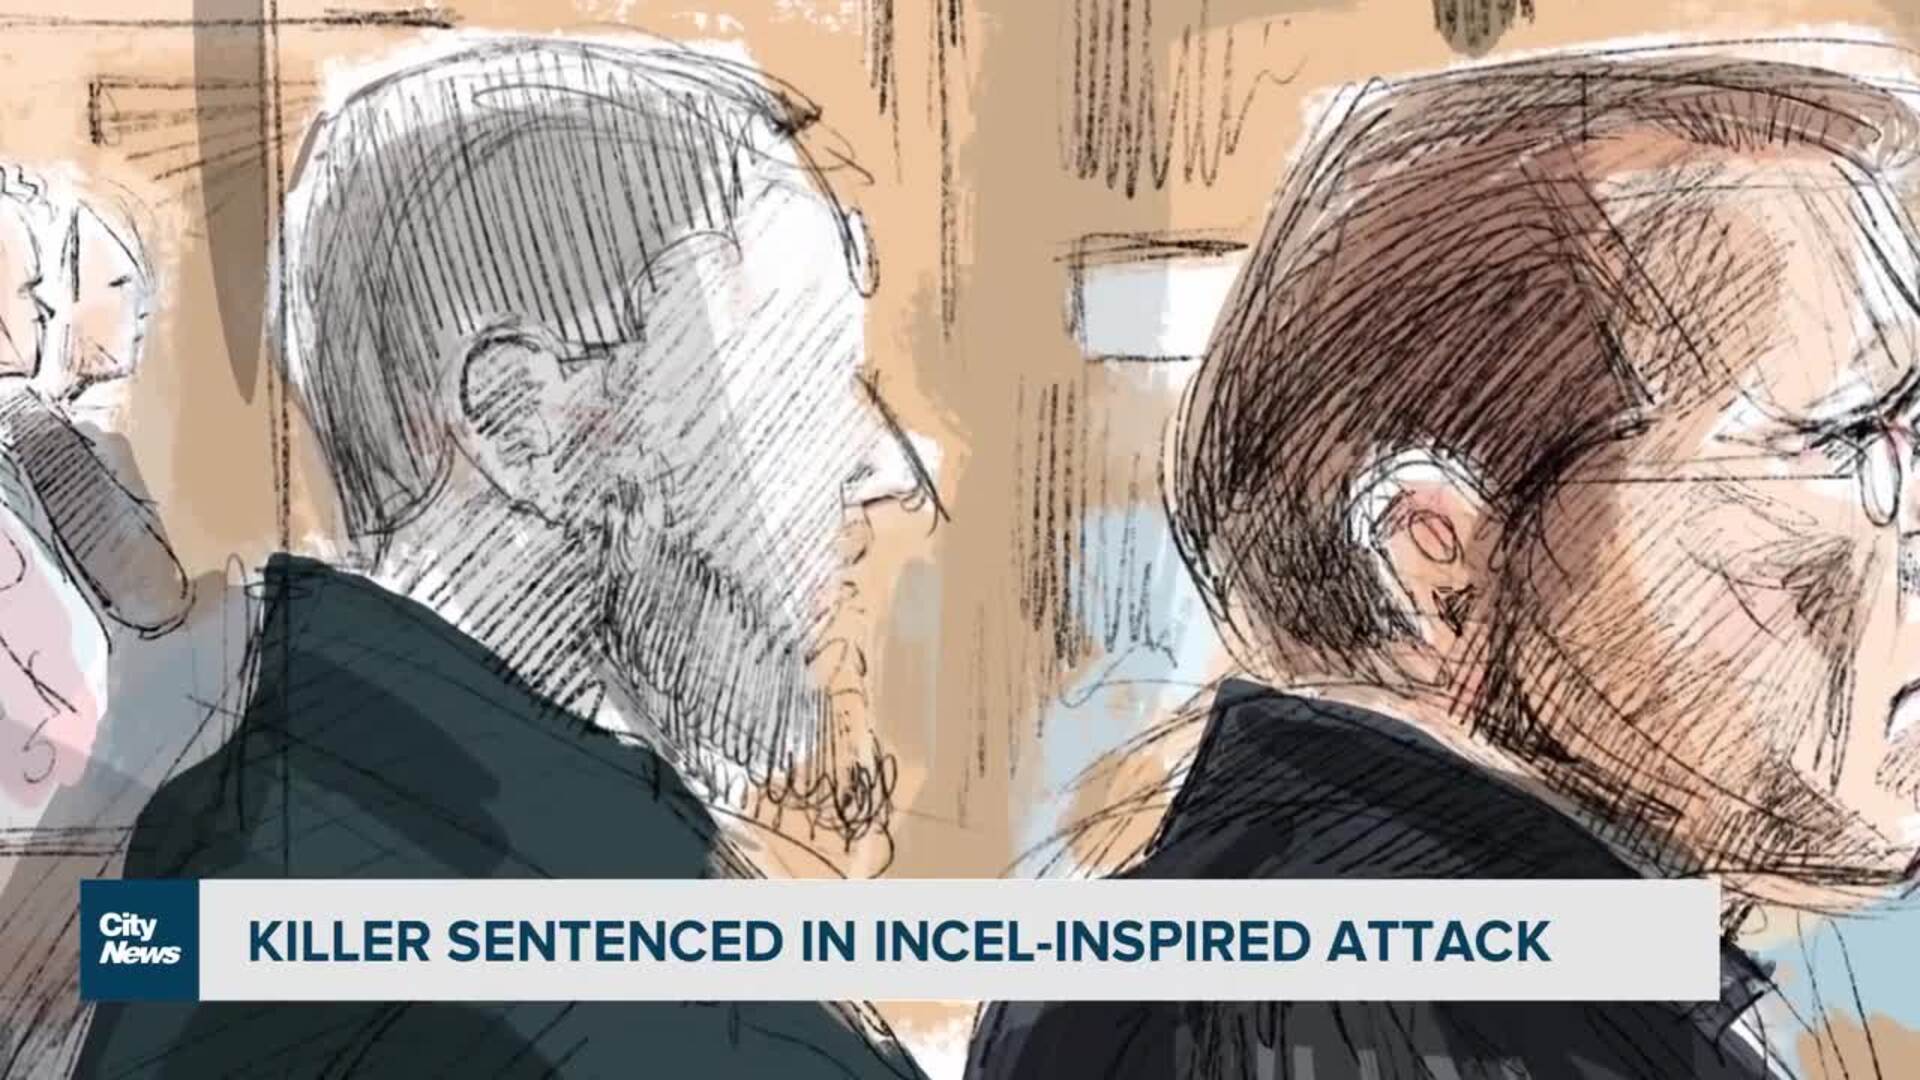 Killer in incel-inspired attack sentenced to life in prison